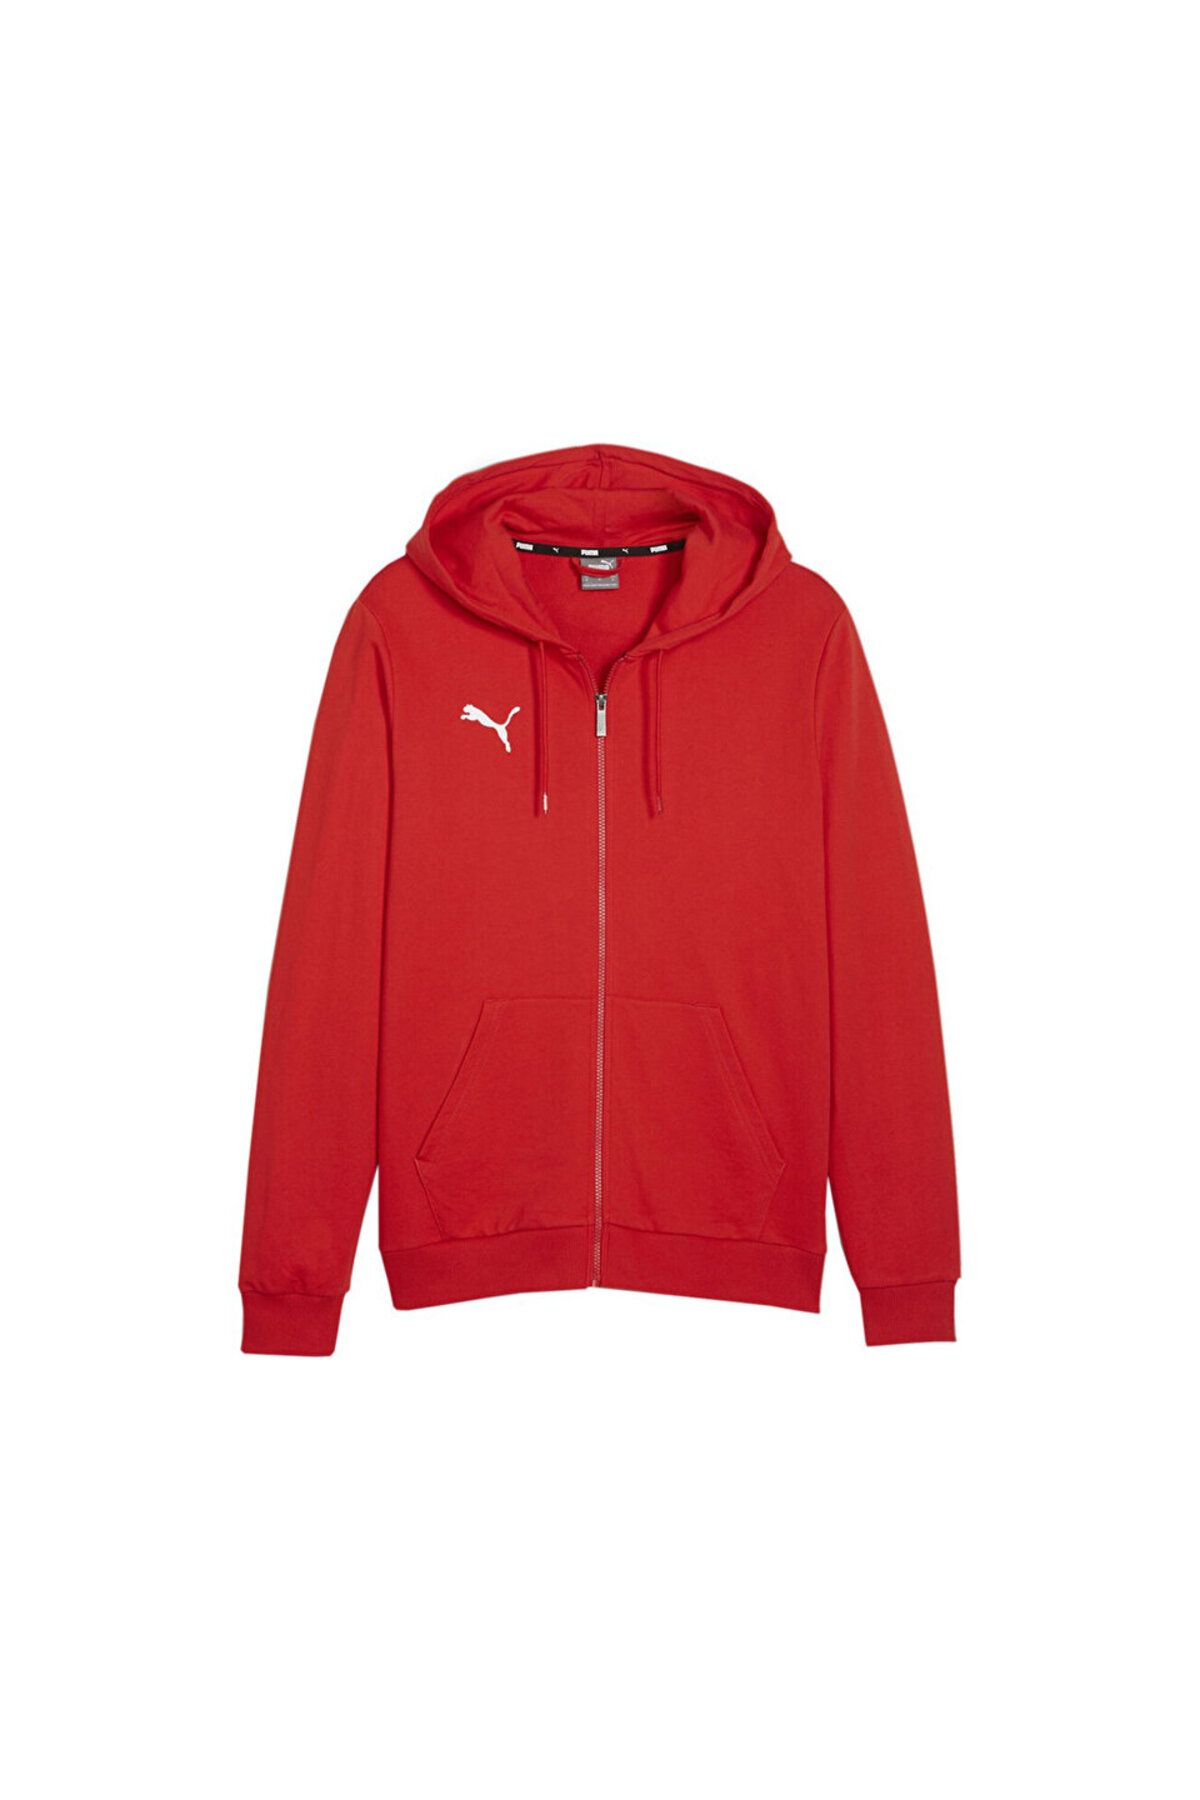 Puma Teamgoal Casuals Hooded Jacket Erkek Futbol Ceketi 65859501 Kırmızı